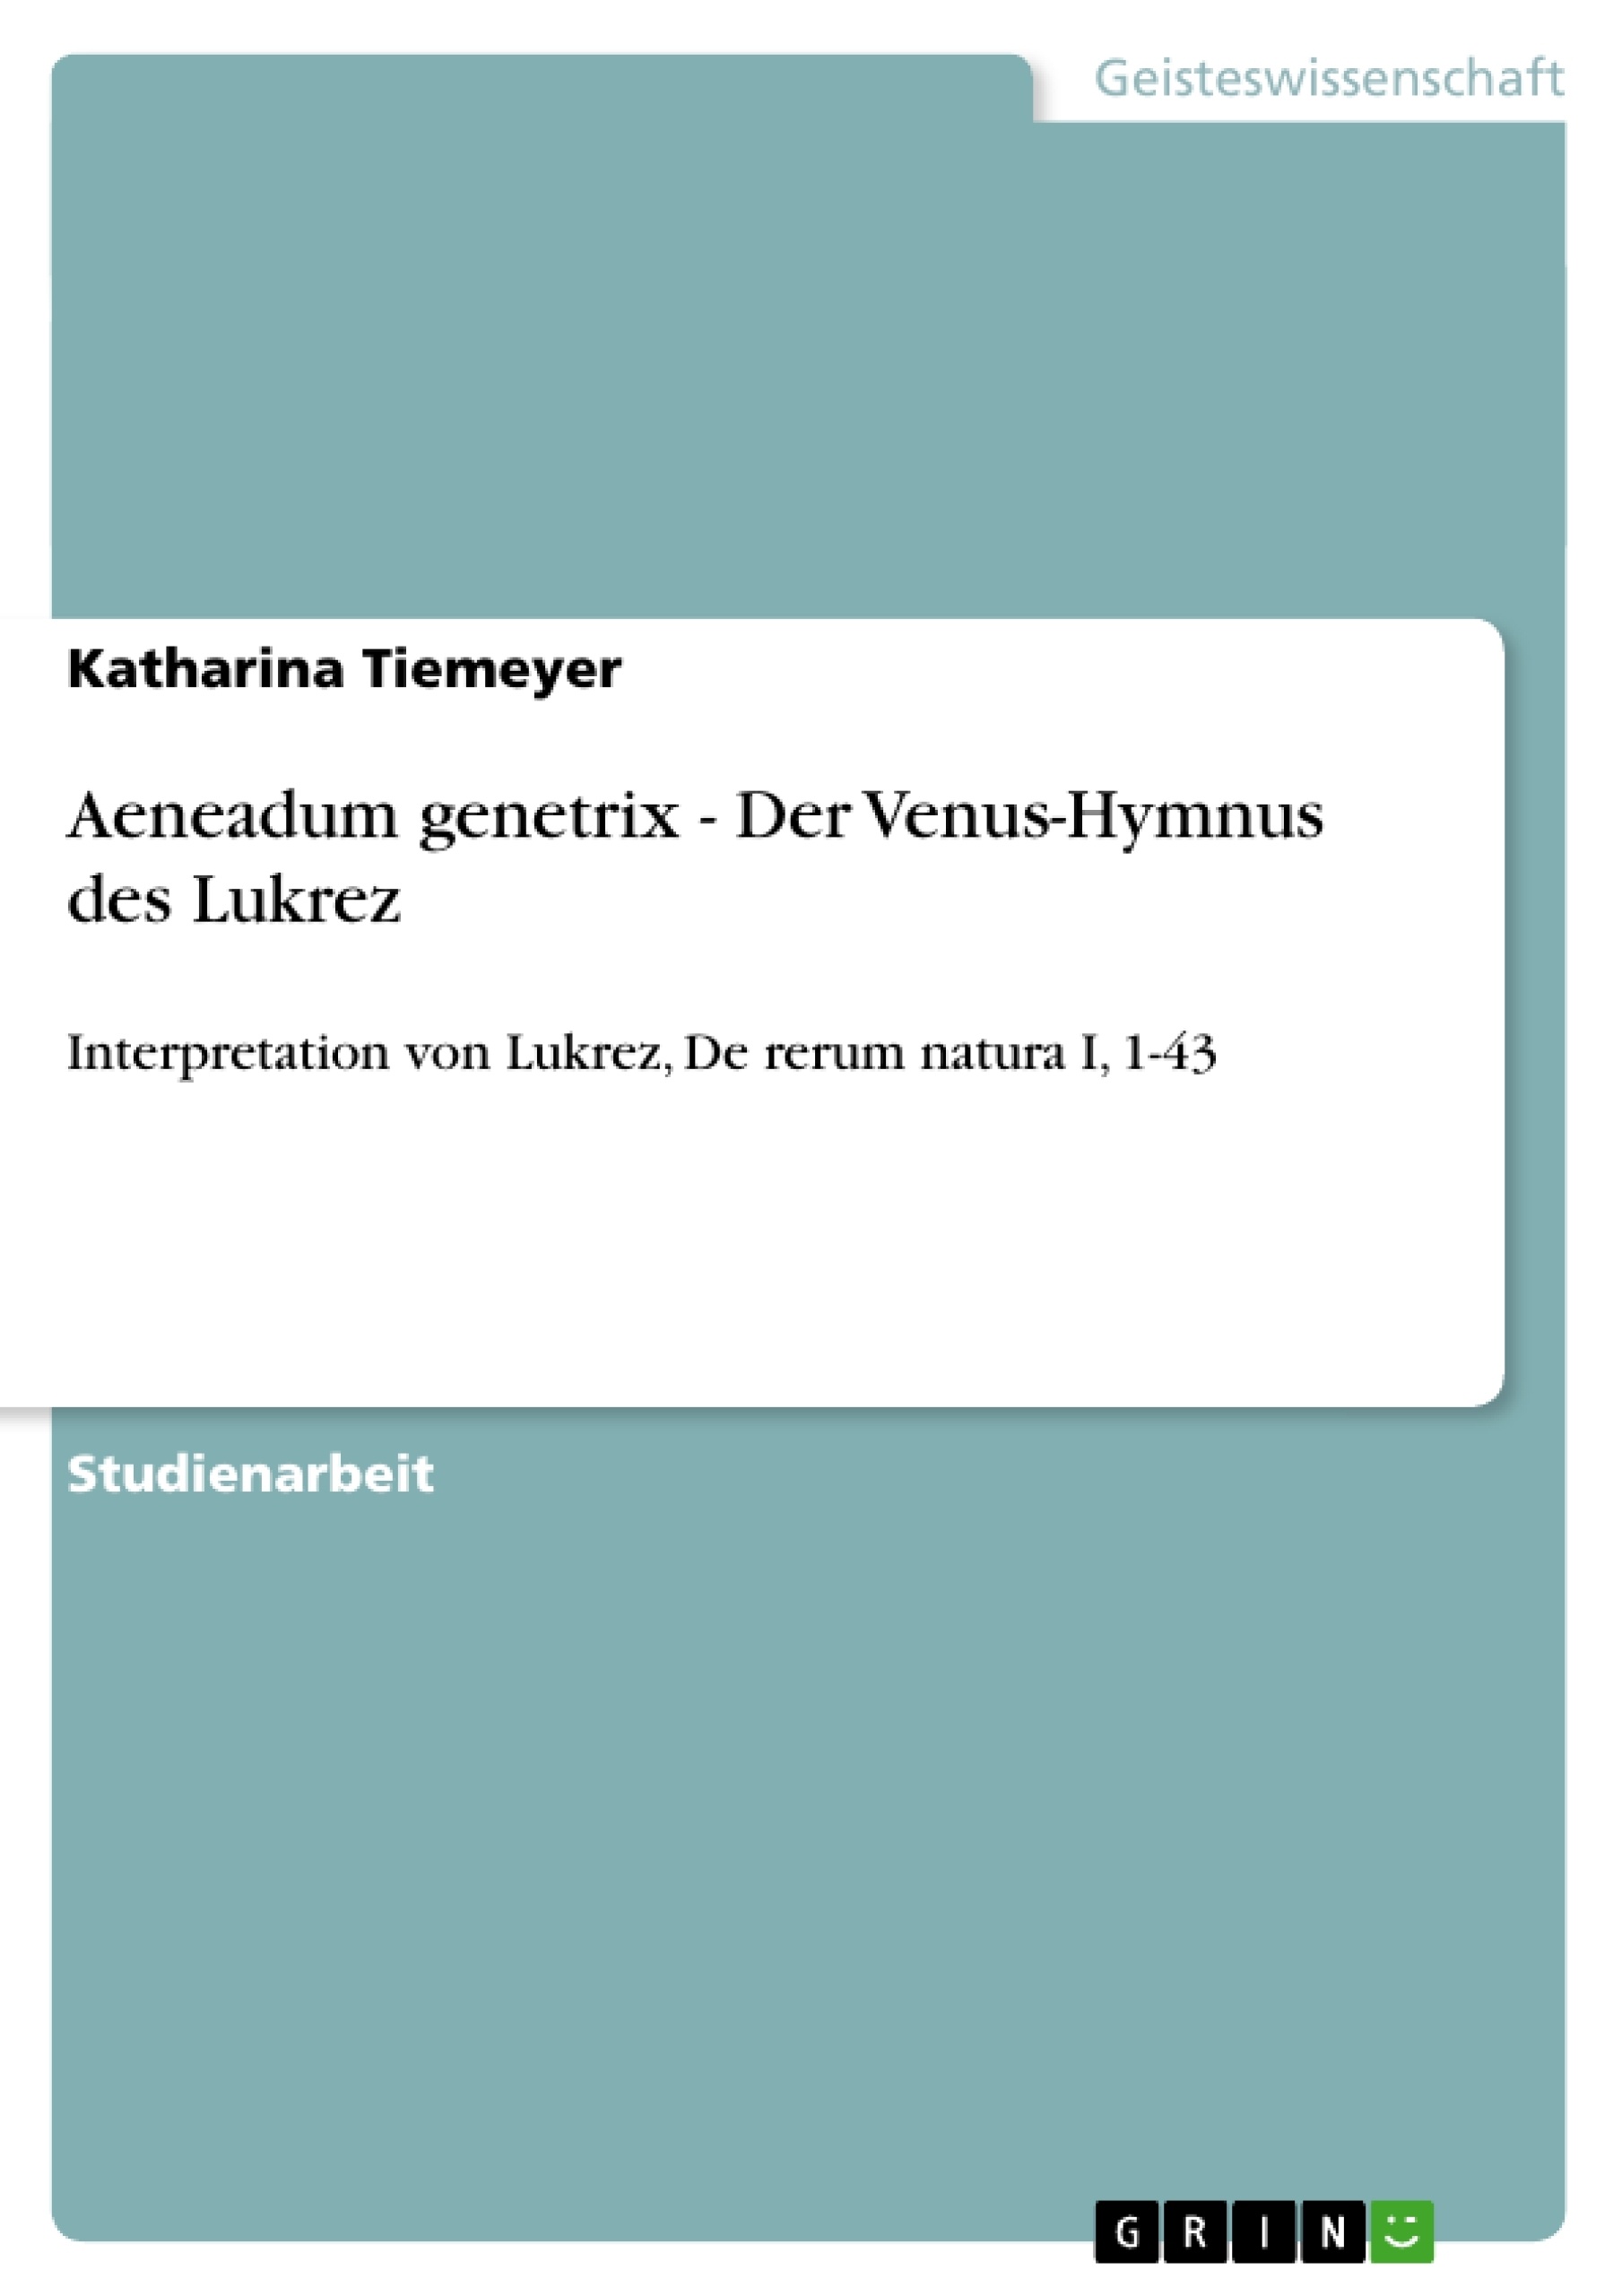 Title: Aeneadum genetrix - Der Venus-Hymnus des Lukrez